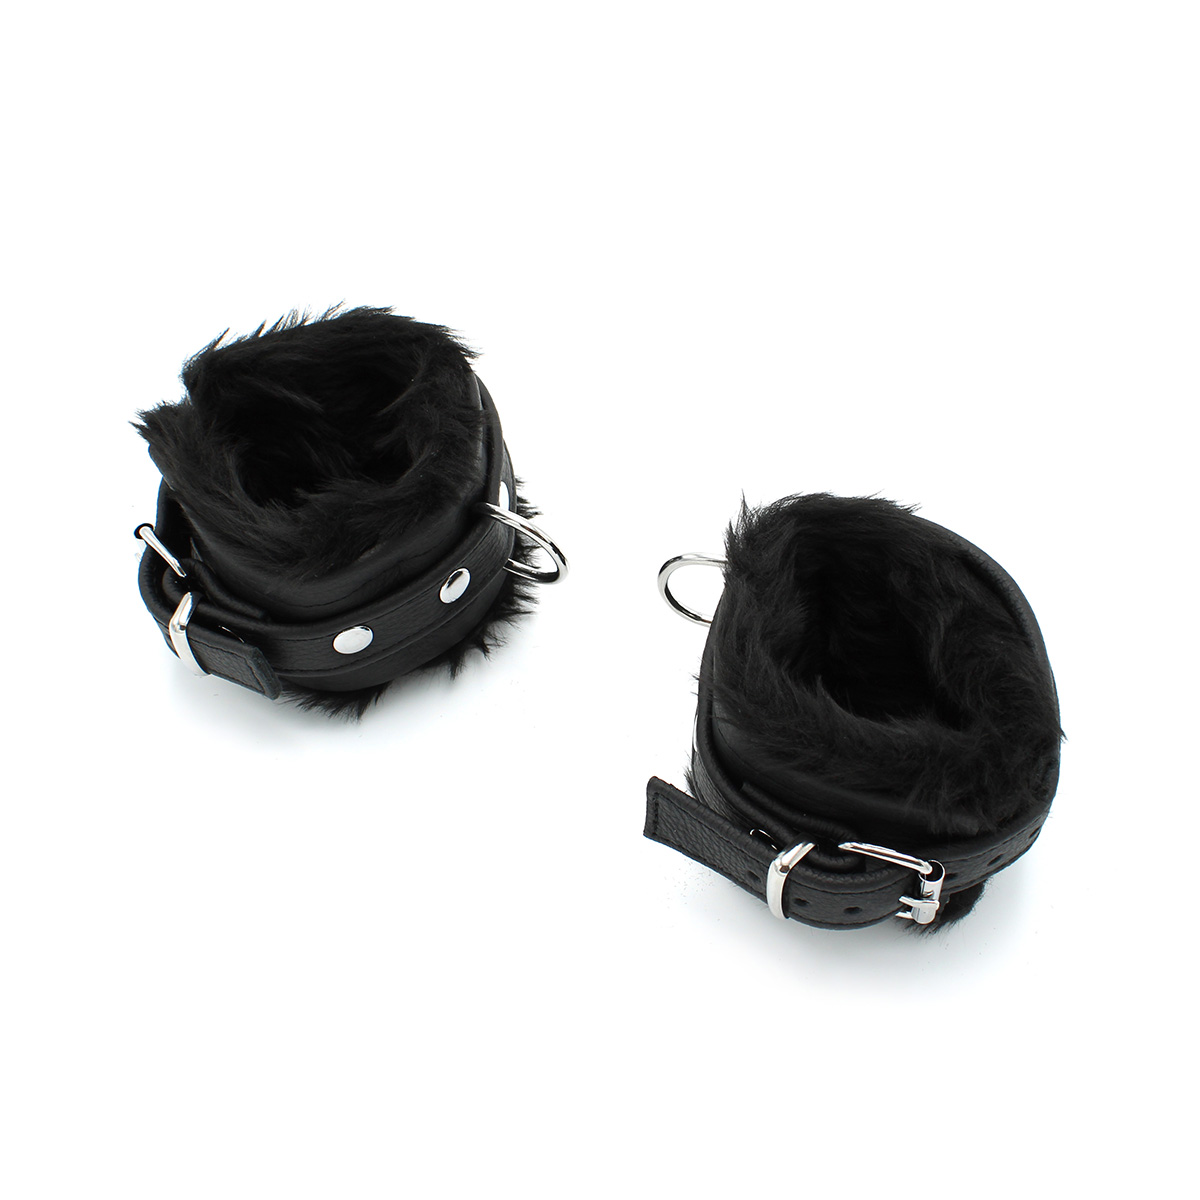 Fluffy-Inside-Black-Leather-Handcuffs-134-KIO-0344-4